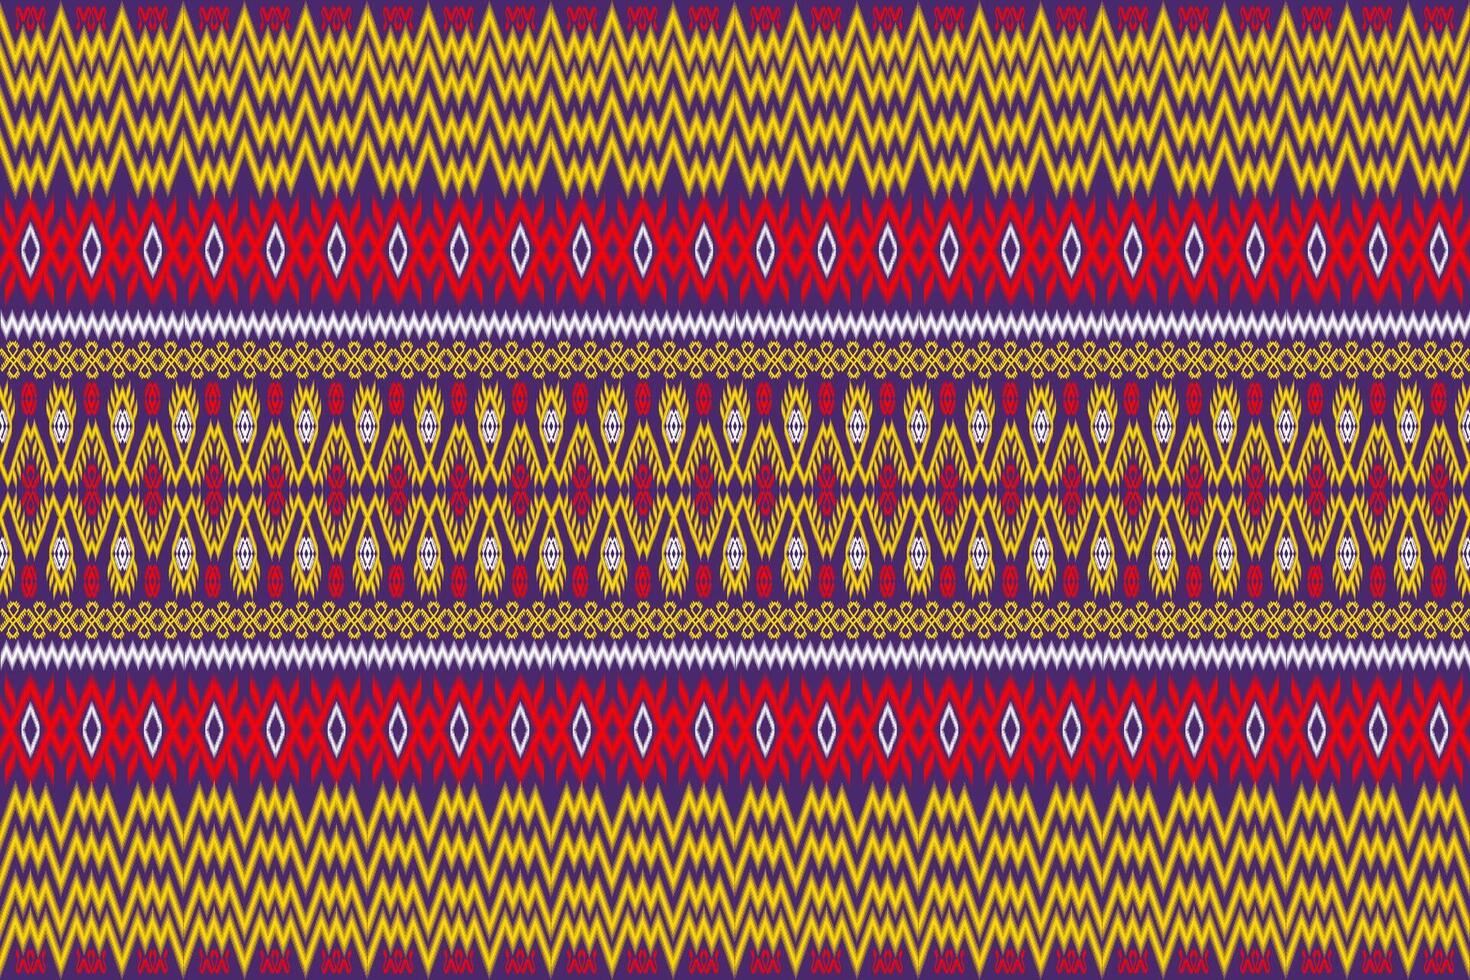 asteca tribal geométrico vetor fundo dentro Preto vermelho amarelo branco desatado listra padronizar. tradicional enfeite étnico estilo. Projeto para têxtil, tecido, roupas, cortina, tapete, ornamento, invólucro.